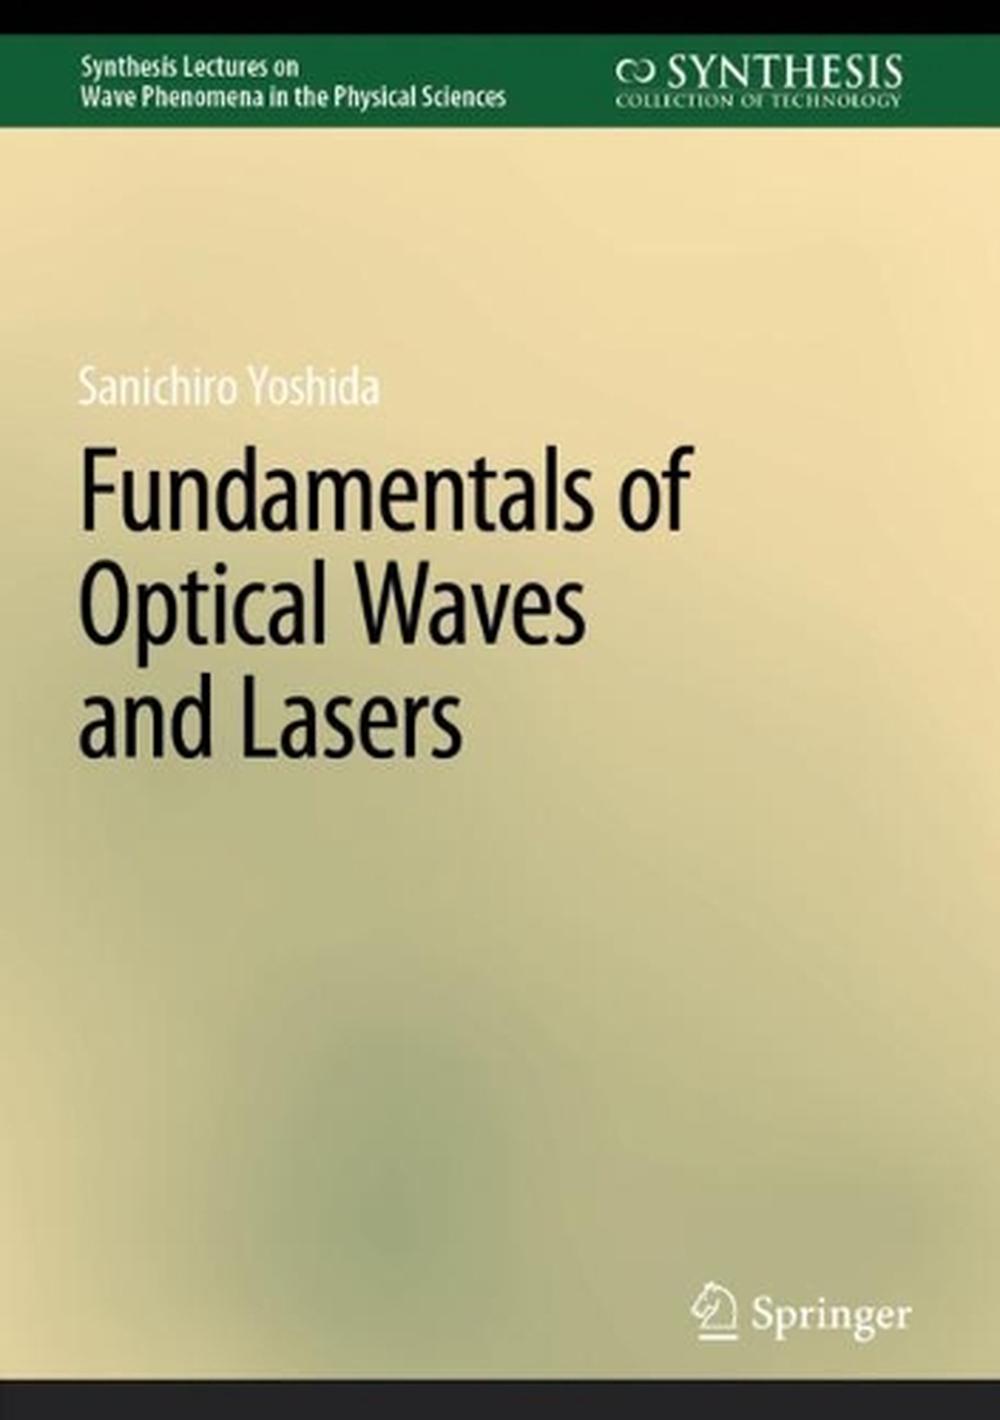 Fundamentals of Optical Waves and Lasers by Sanichiro Yoshida ...